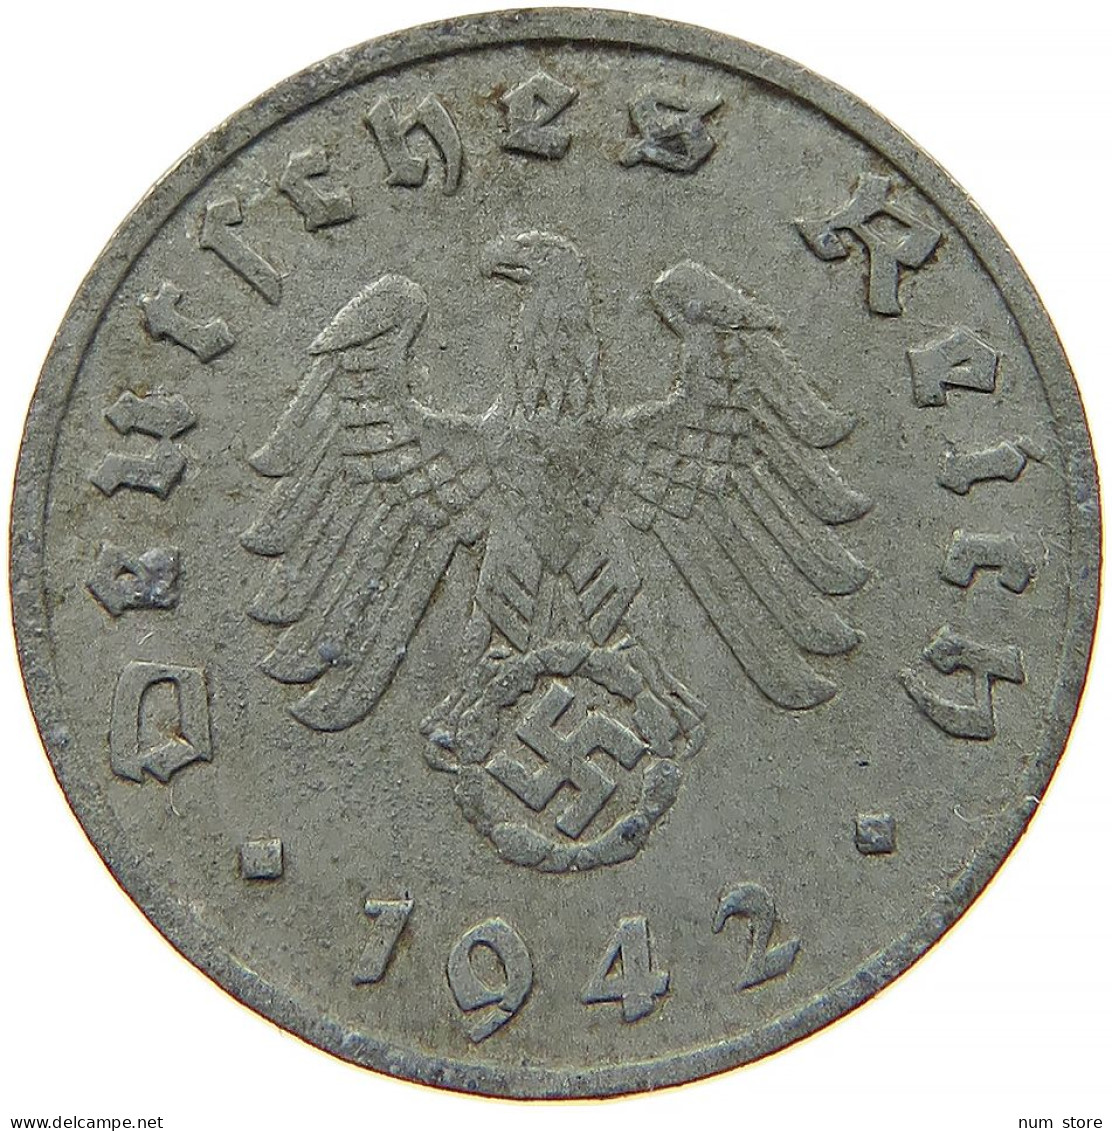 GERMANY 1 REICHSPFENNIG 1942 F #s091 1077 - 1 Reichspfennig